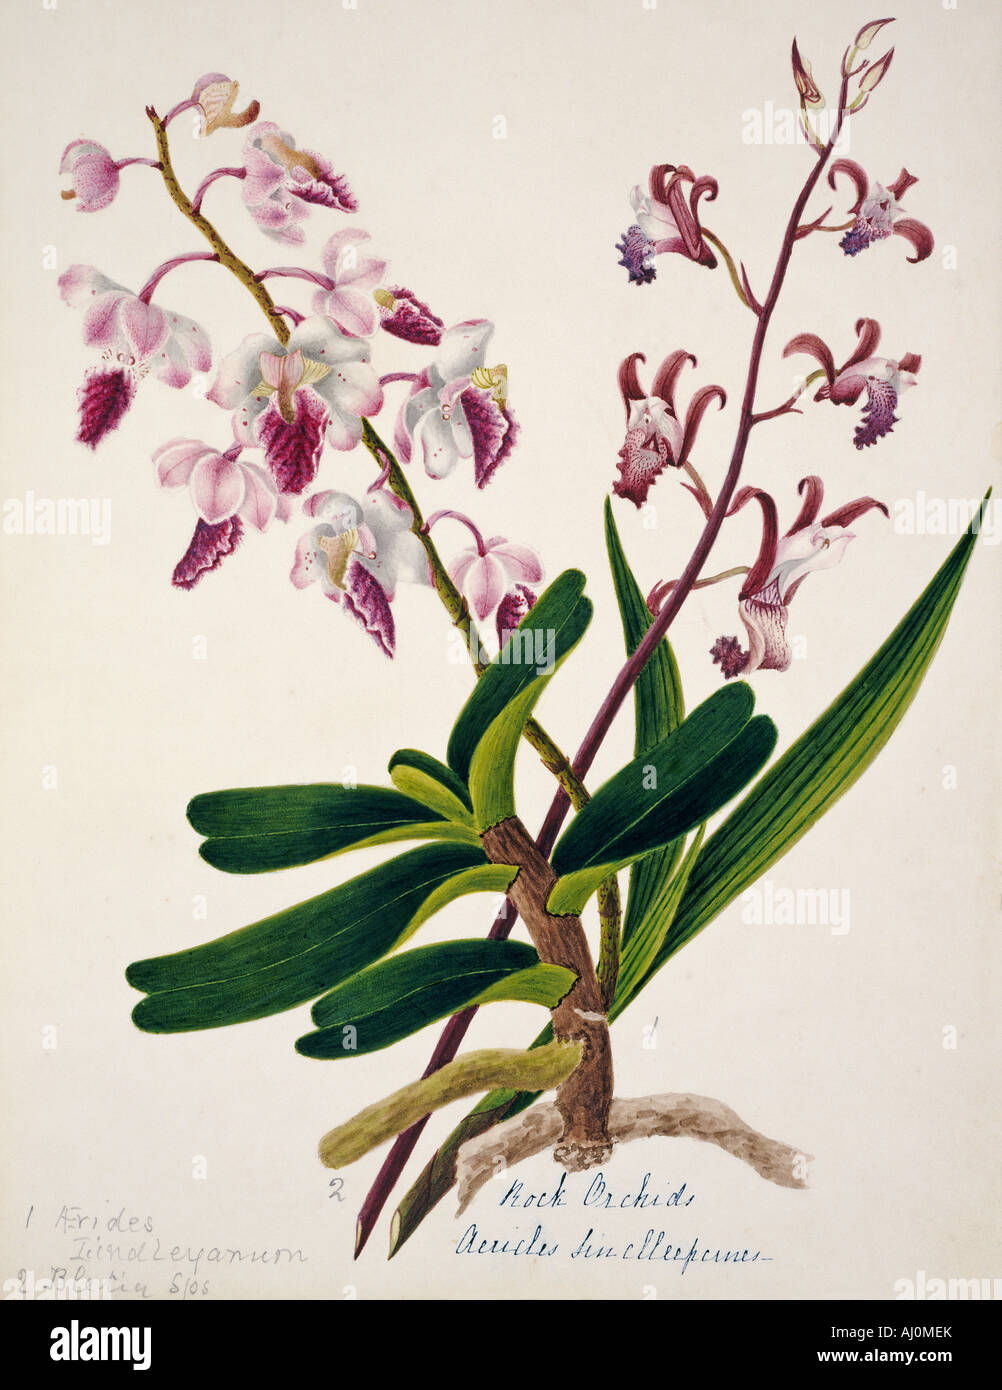 Aerides iindleyanum rock orchid Stock Photo